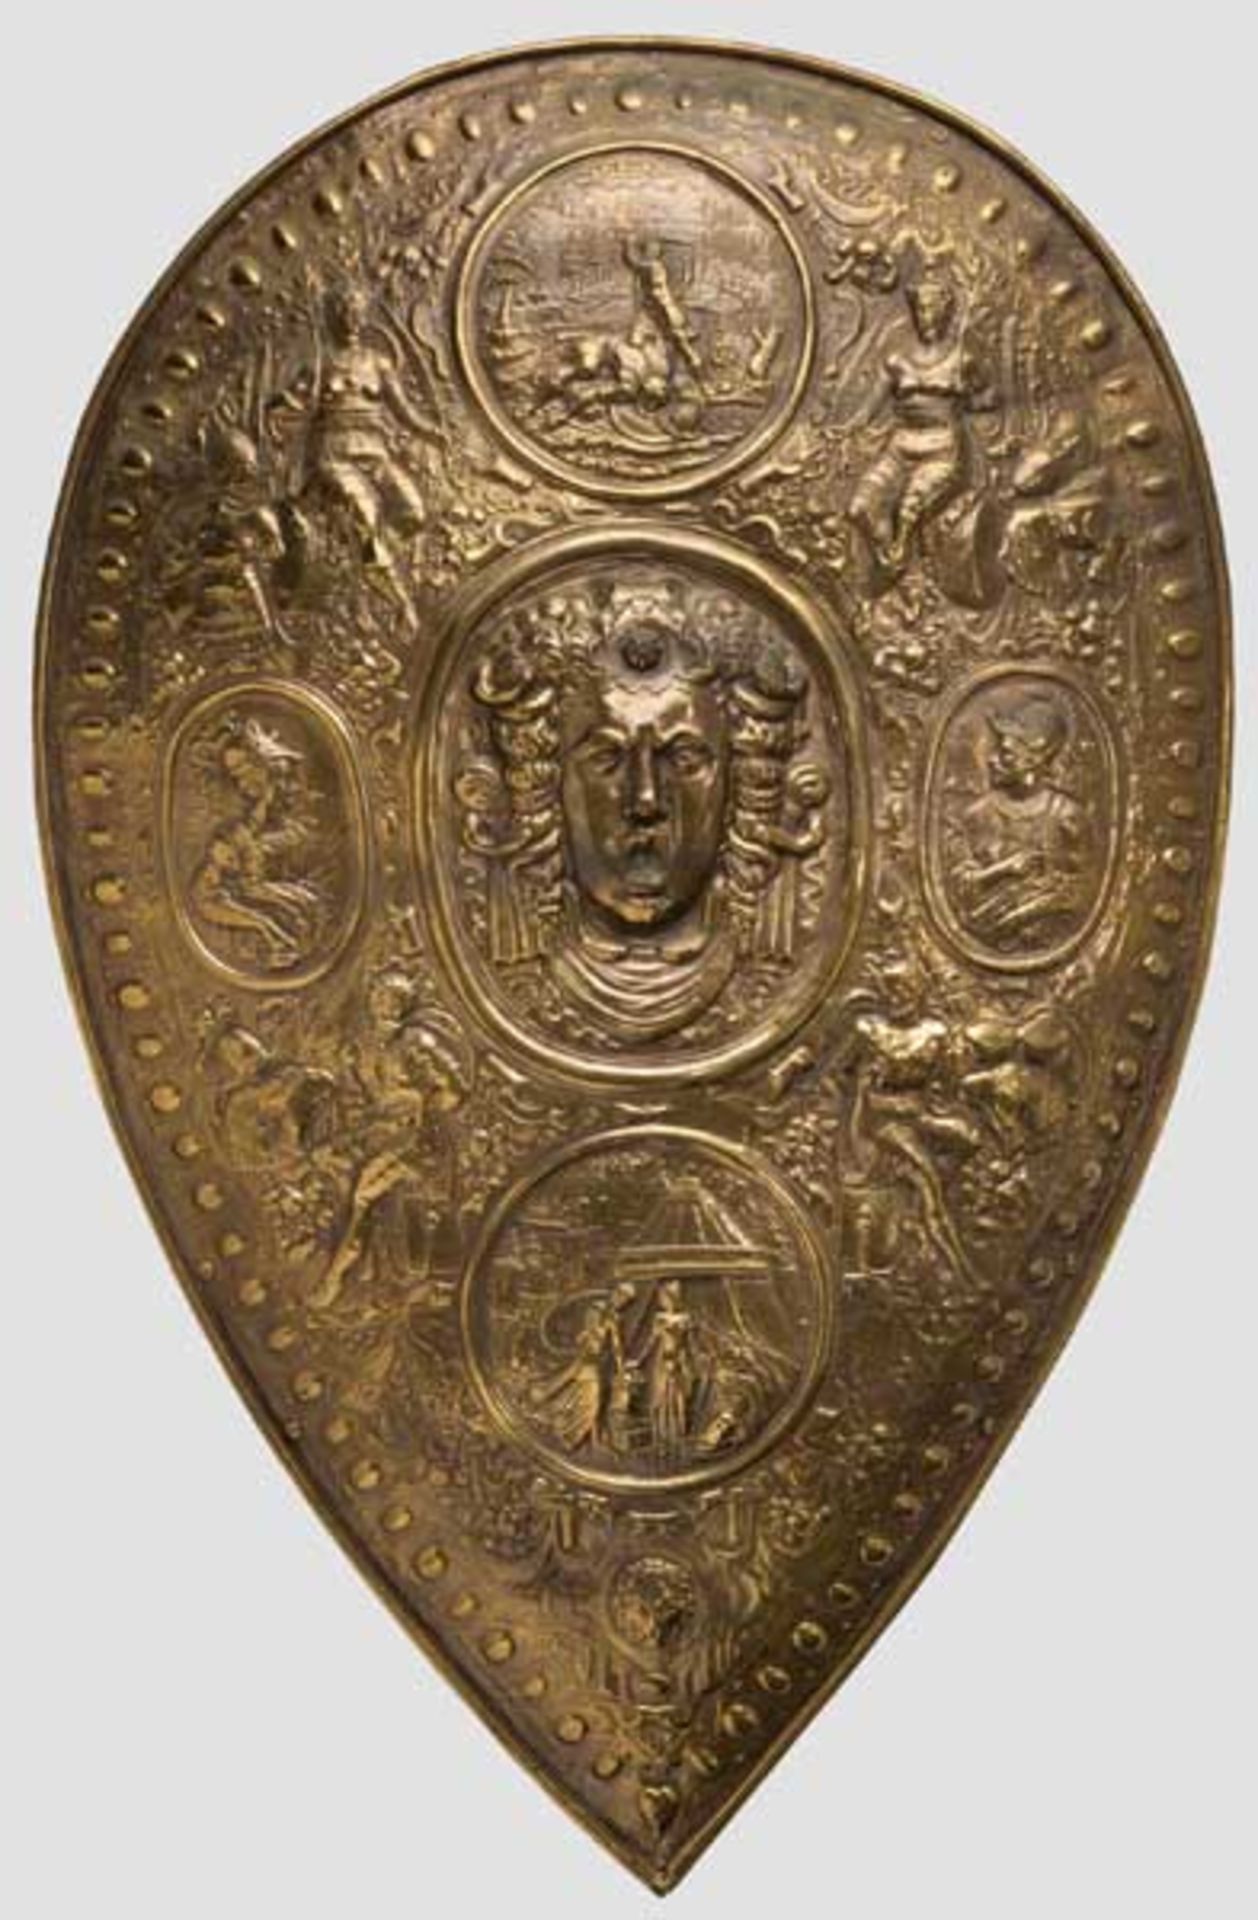 Renaissance-Prunkschild, Historismus im Stil des 16. Jhdts. Reliefierter, tropfenförmiger Schild aus